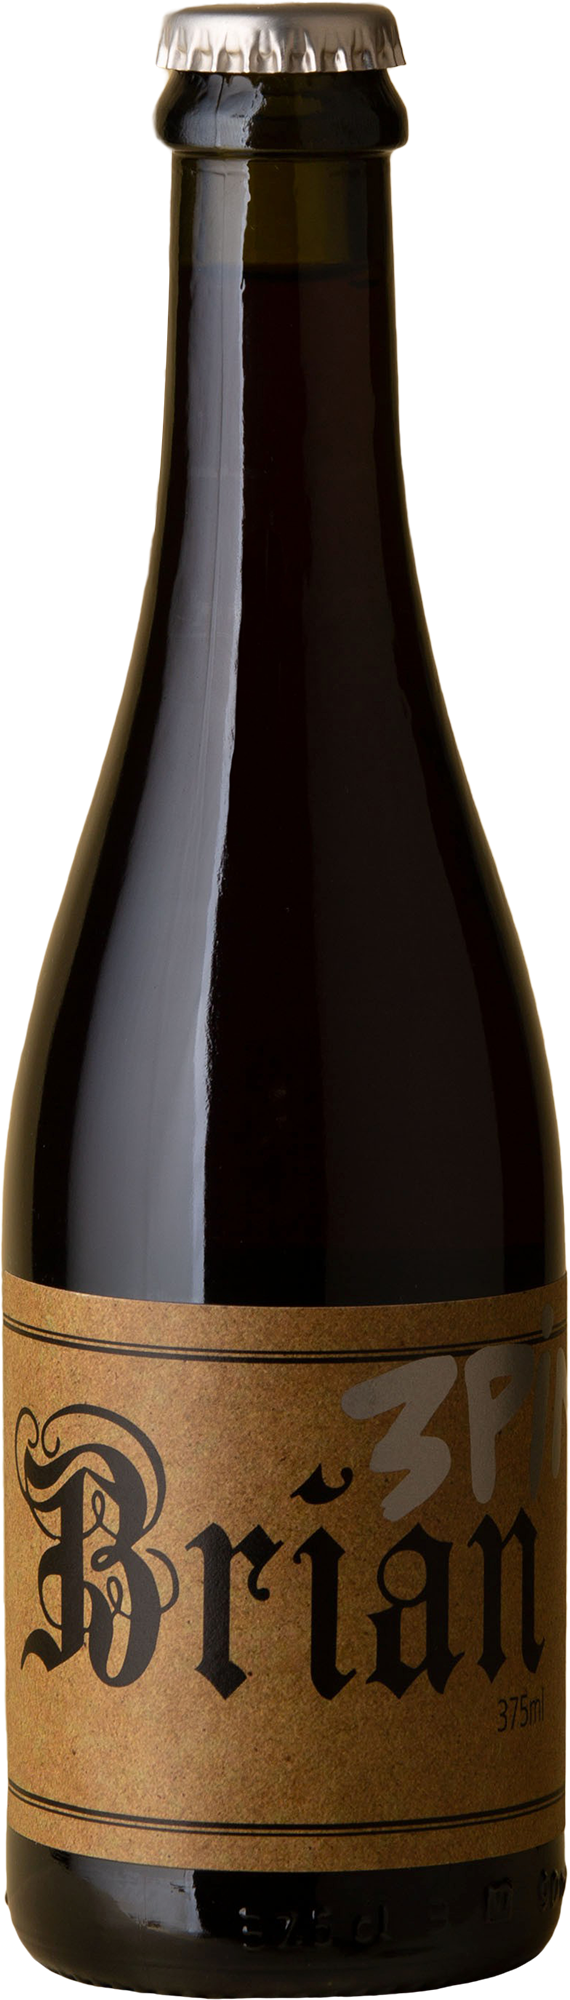 Brian Wines - 3 Pinots Blend 2018 (375ml)